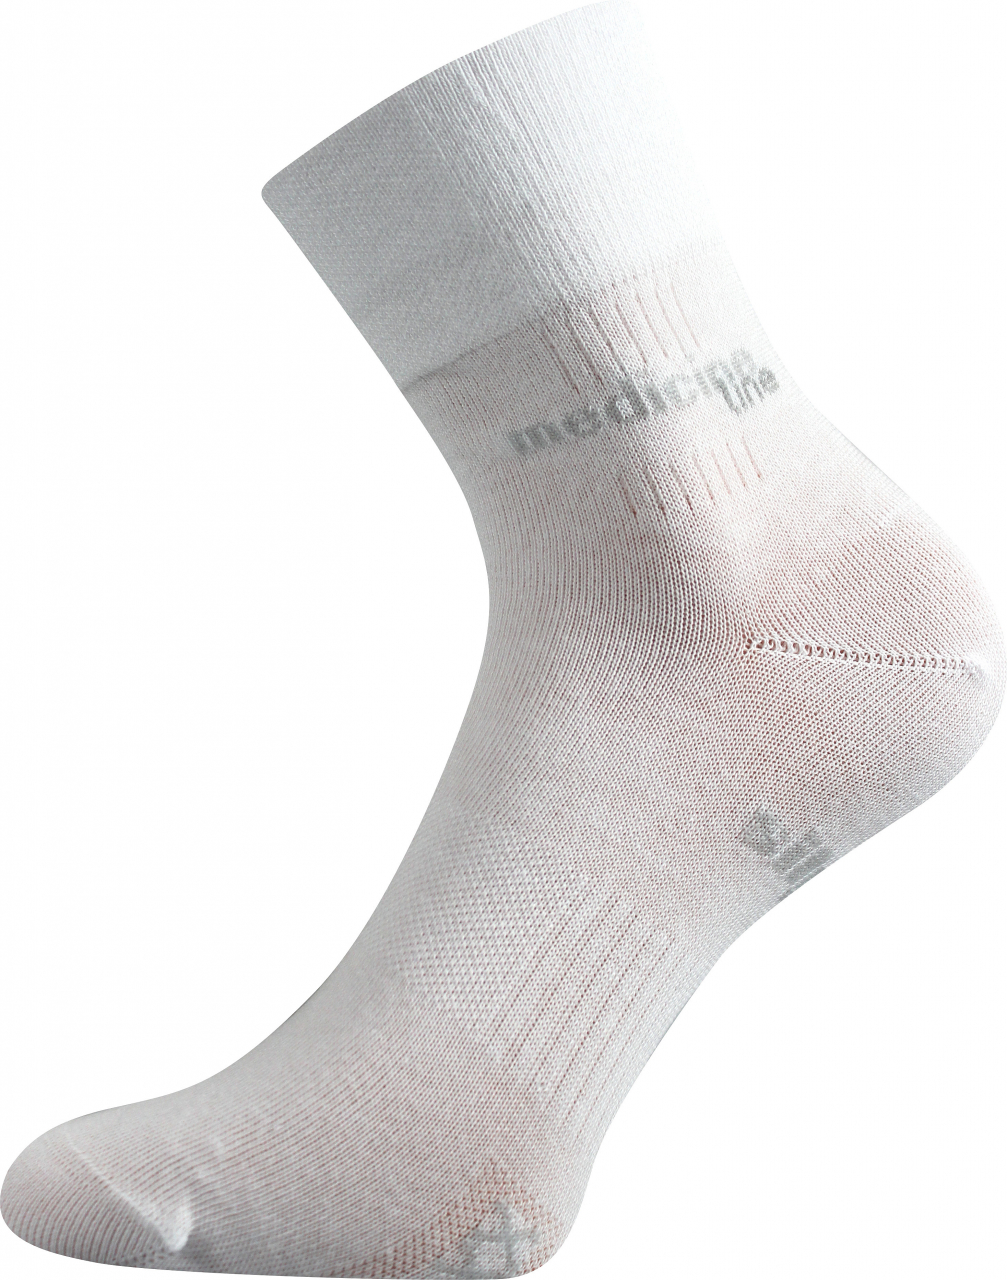 Ponožky zdravotní Mission Medicine - bílé, 43-46